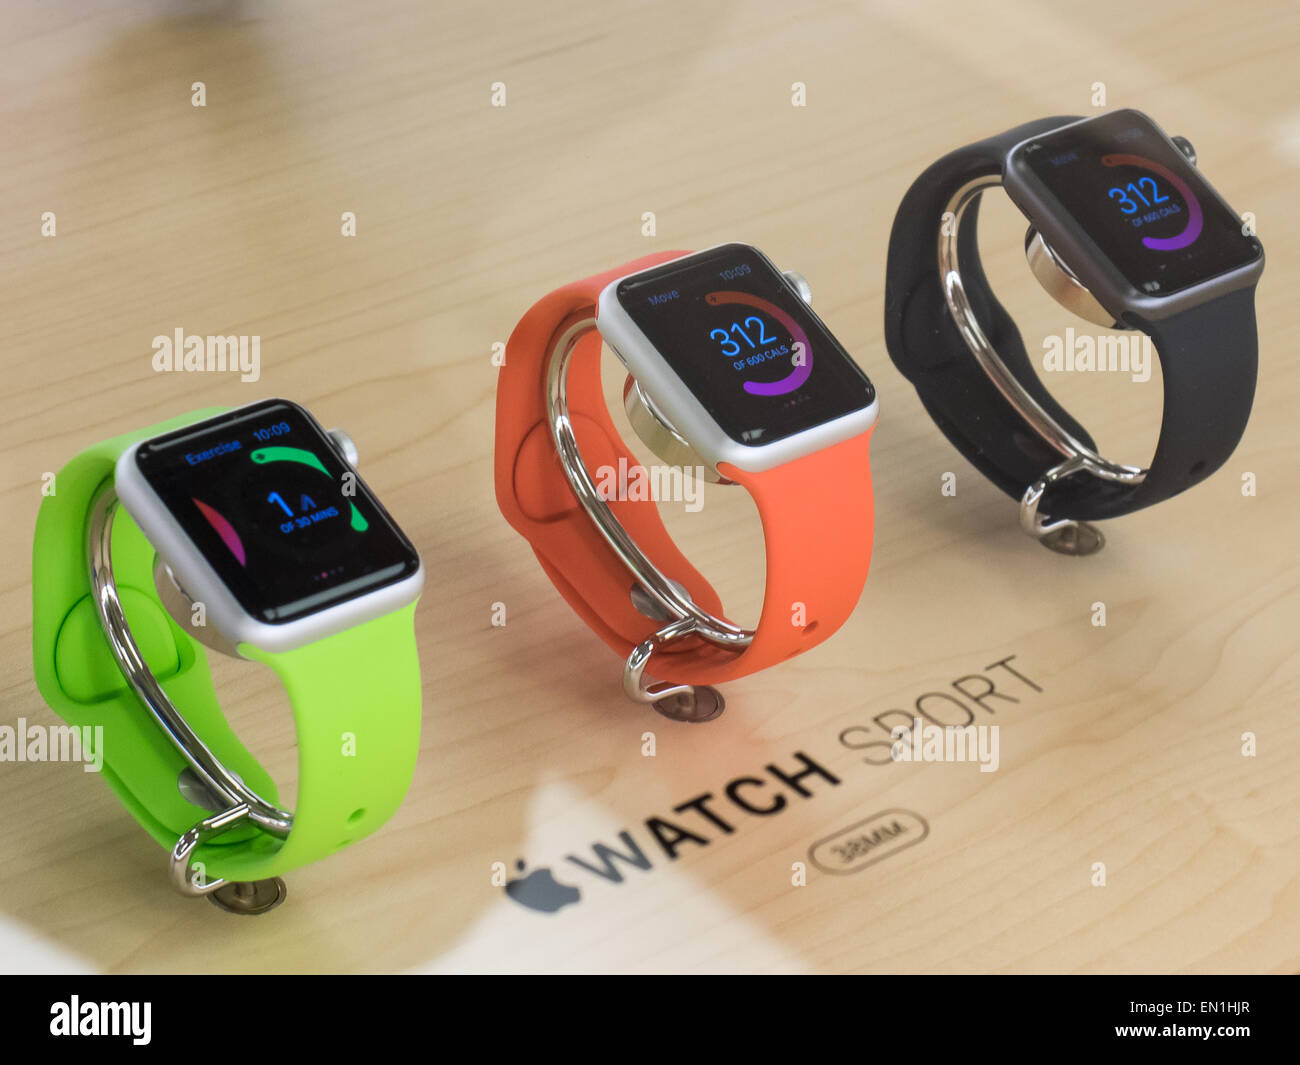 Apple watch sport цена